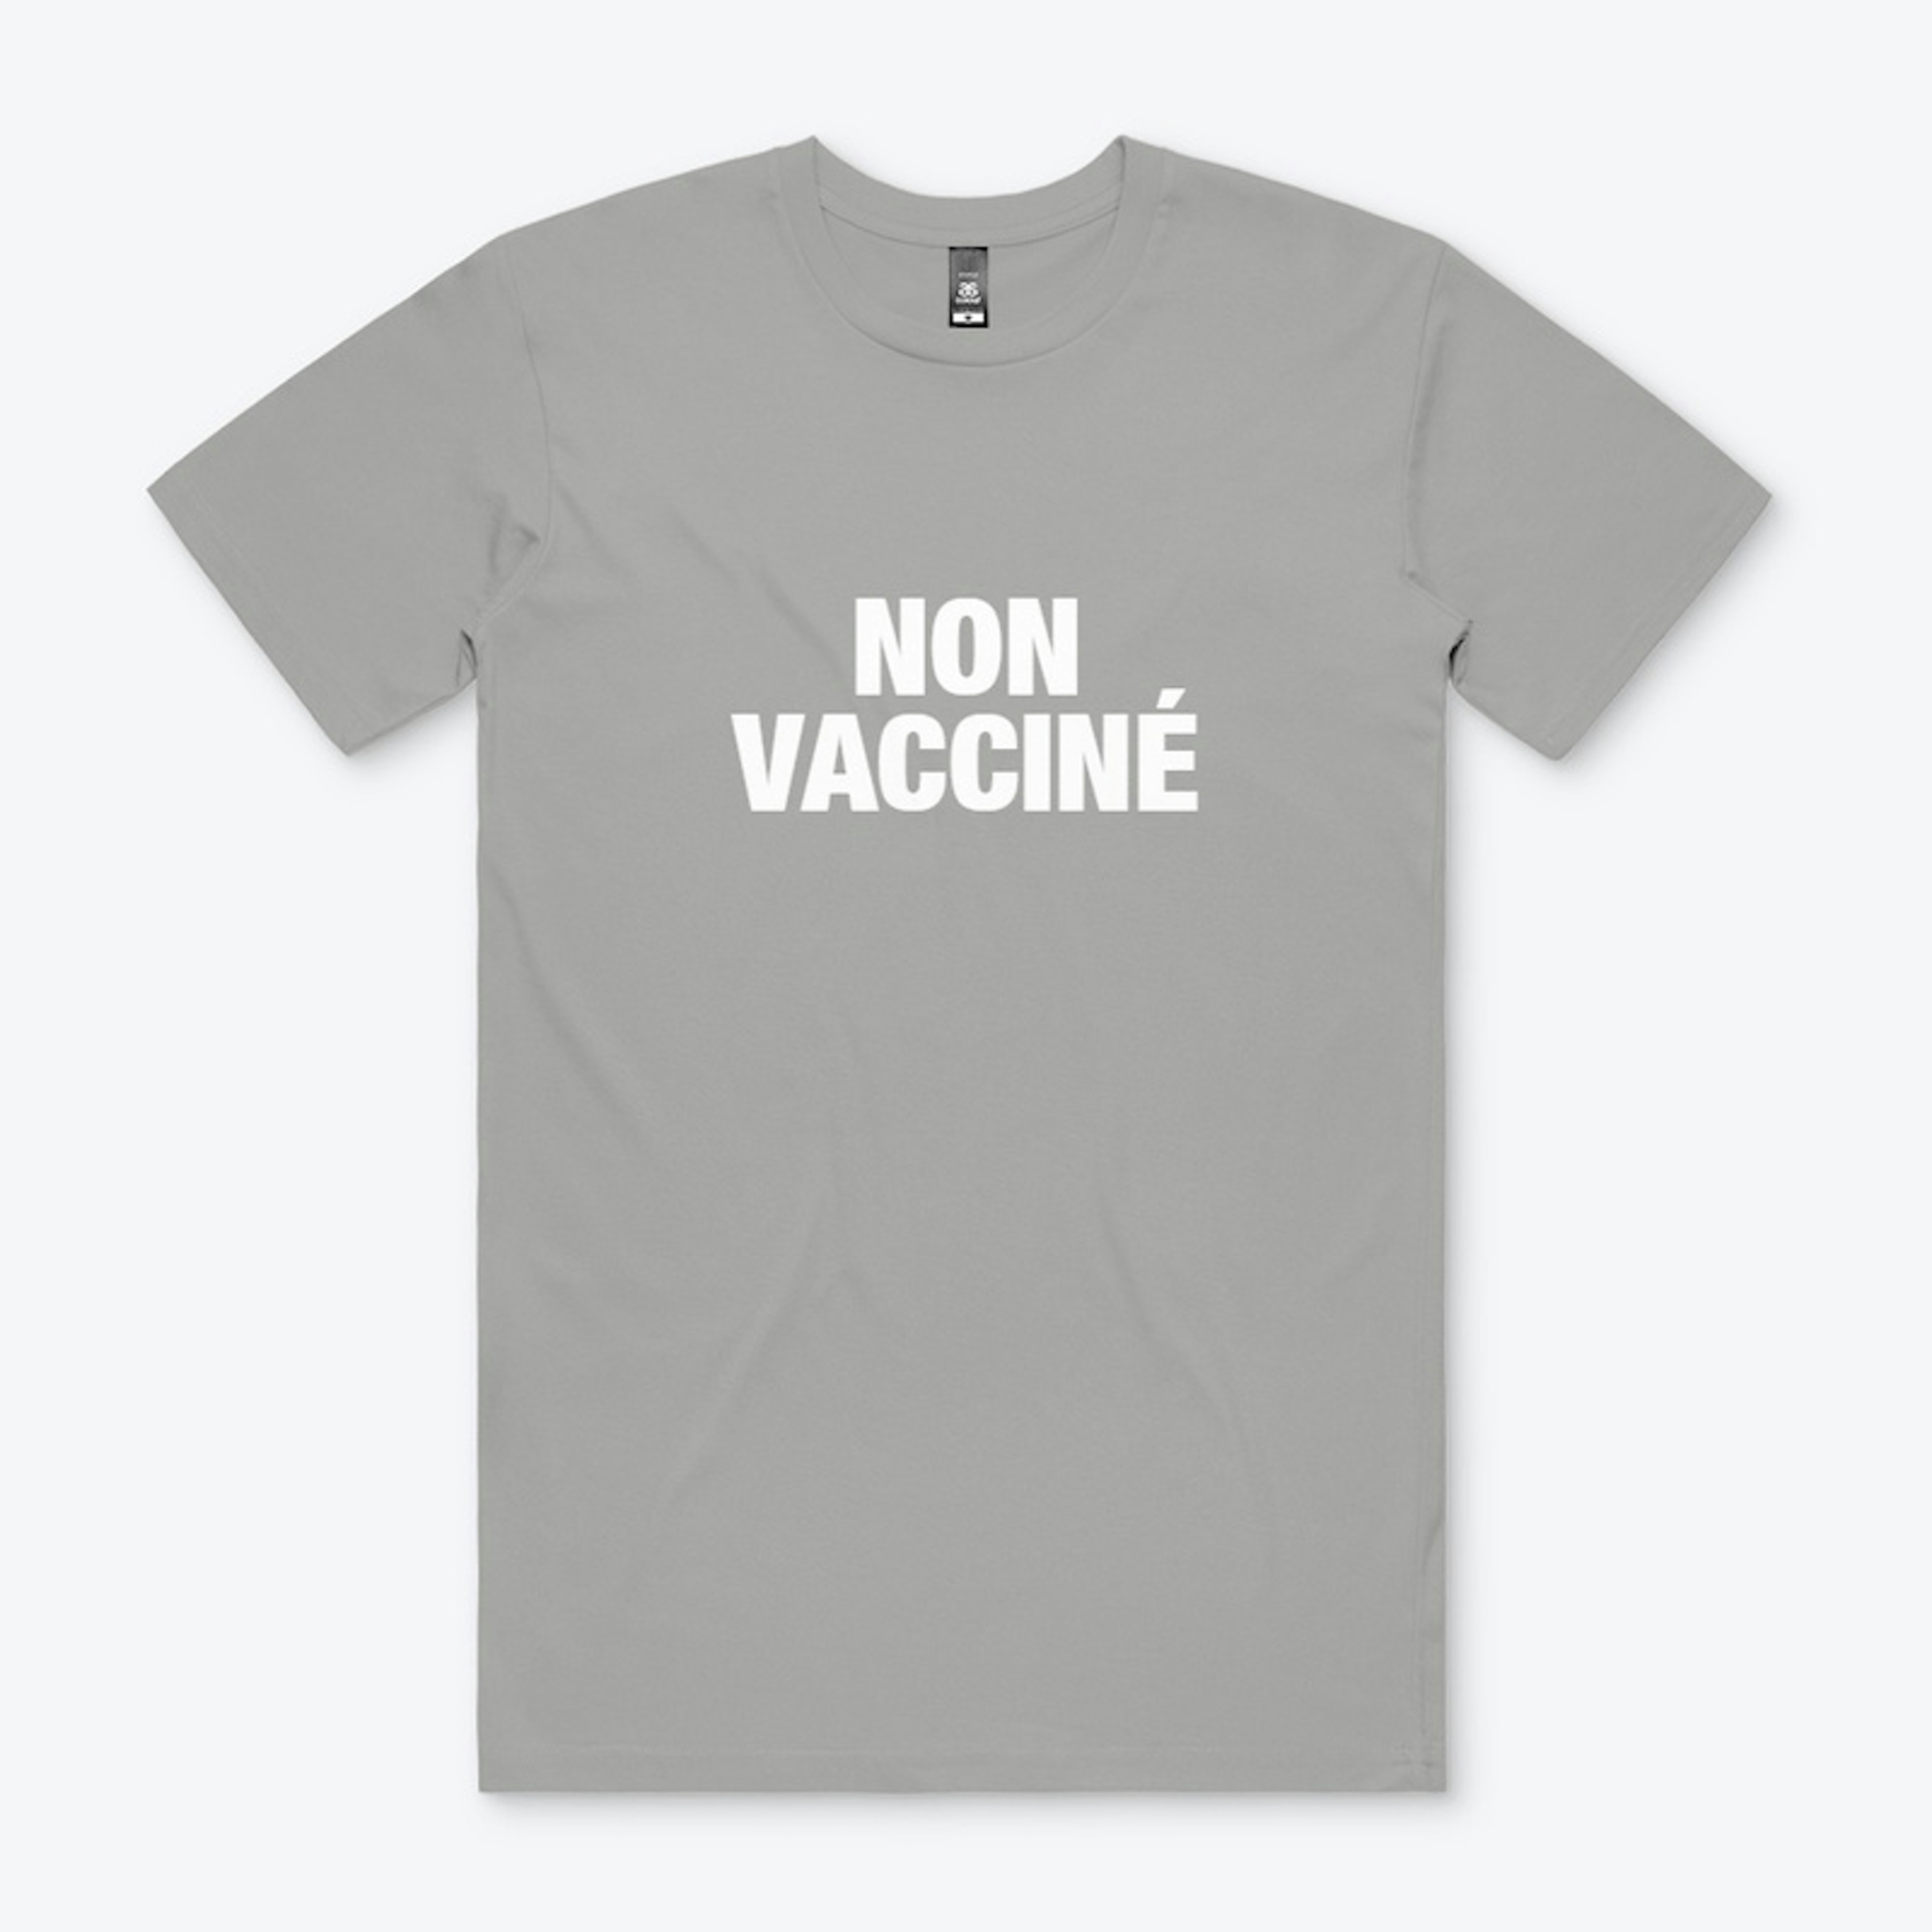 Non vacciné